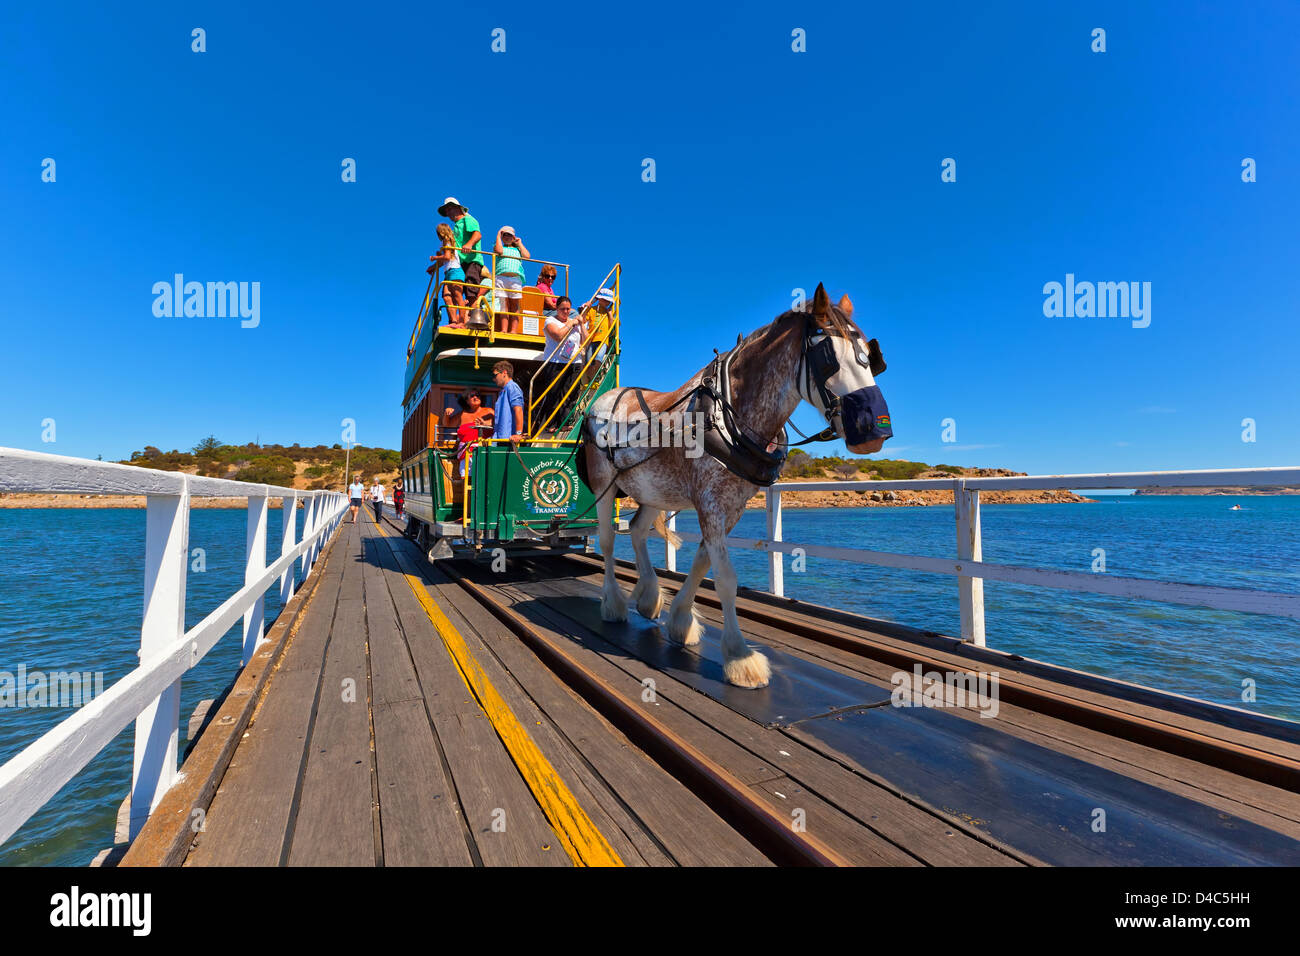 Granite Island Pferden gezogene Straßenbahn Menschen Tourismus Touristen Clydesdale historische Victor Harbor Fleurieu Peninsula South Australia Stockfoto